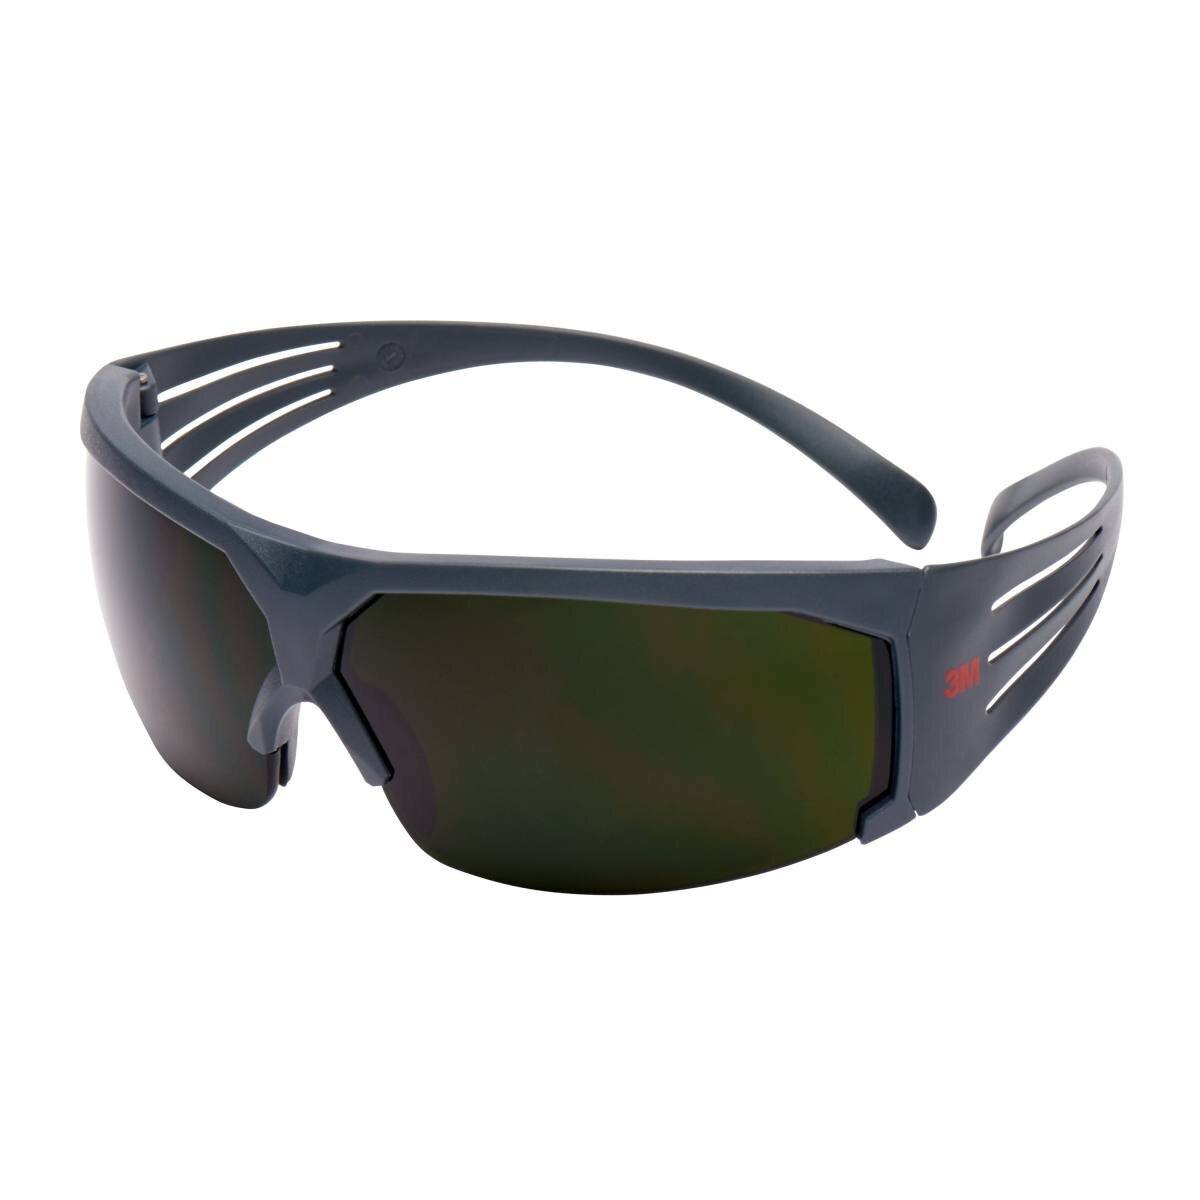 3M Gafas de protección SecureFit 600, patillas grises, tratamiento antirrayas, nivel de protección 5.0, SF650AS-EU